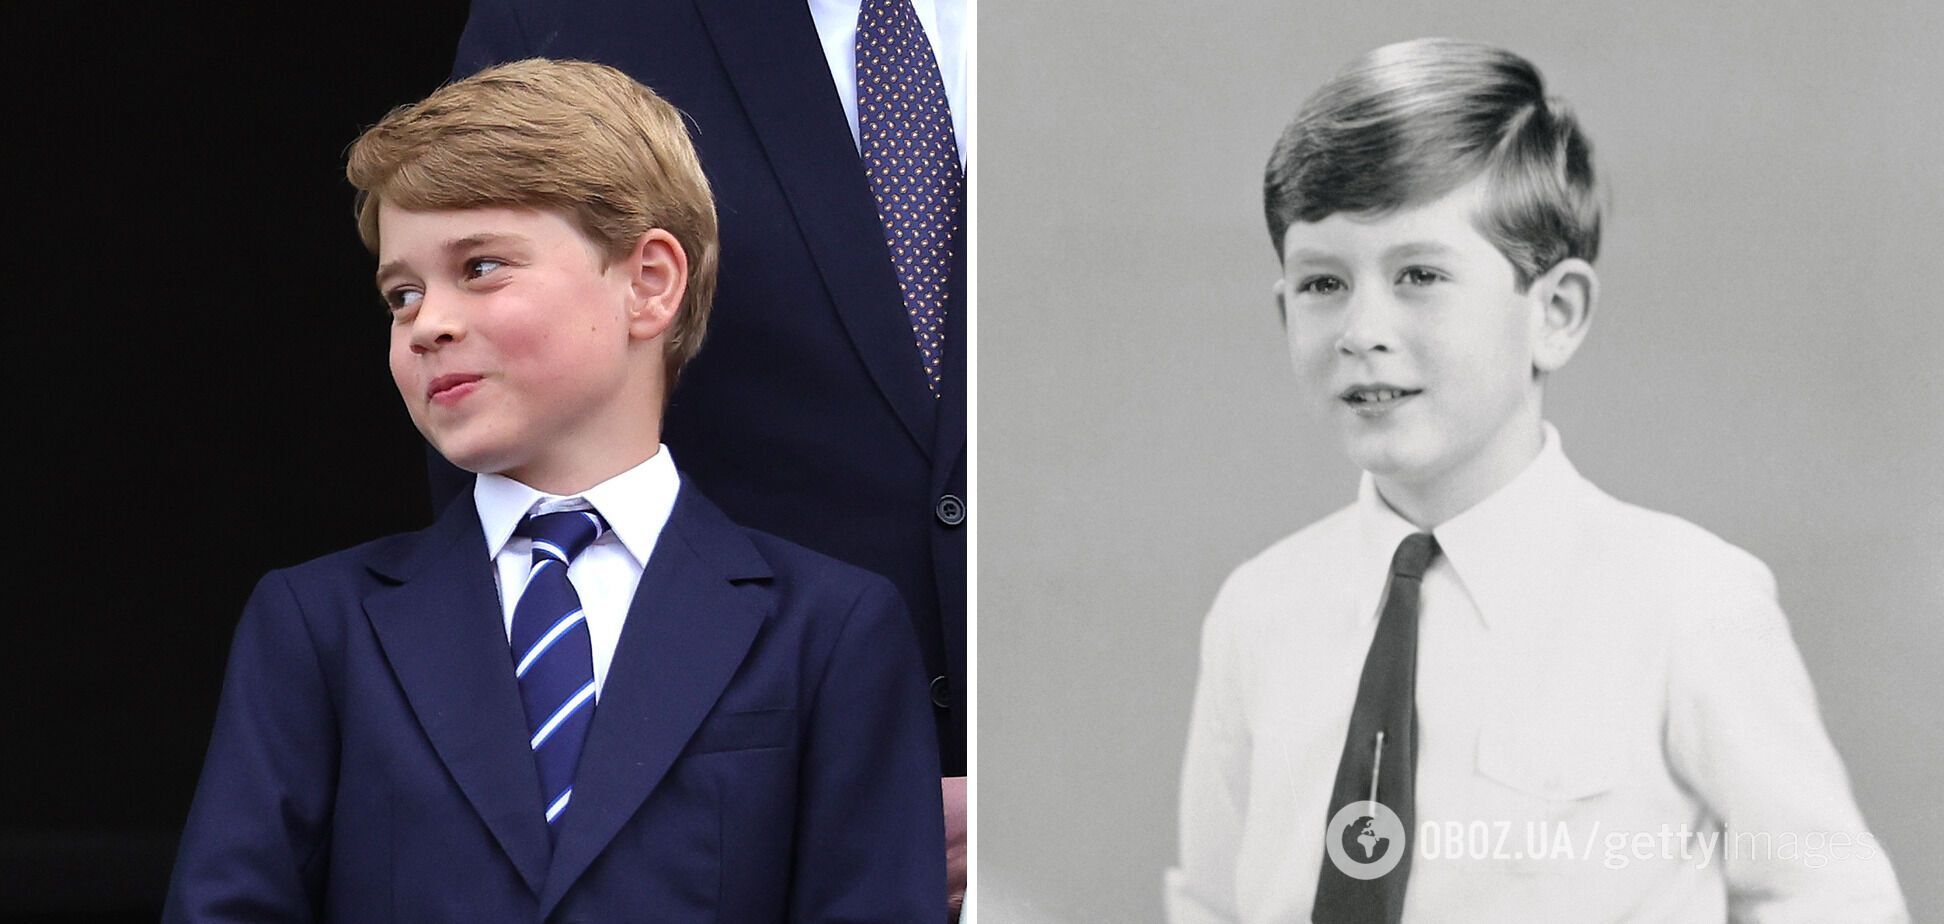 Копия Чарльза ІІІ. Королевские поклонники заметили потрясающее сходство 10-летнего принца Джорджа с дедушкой в таком же возрасте